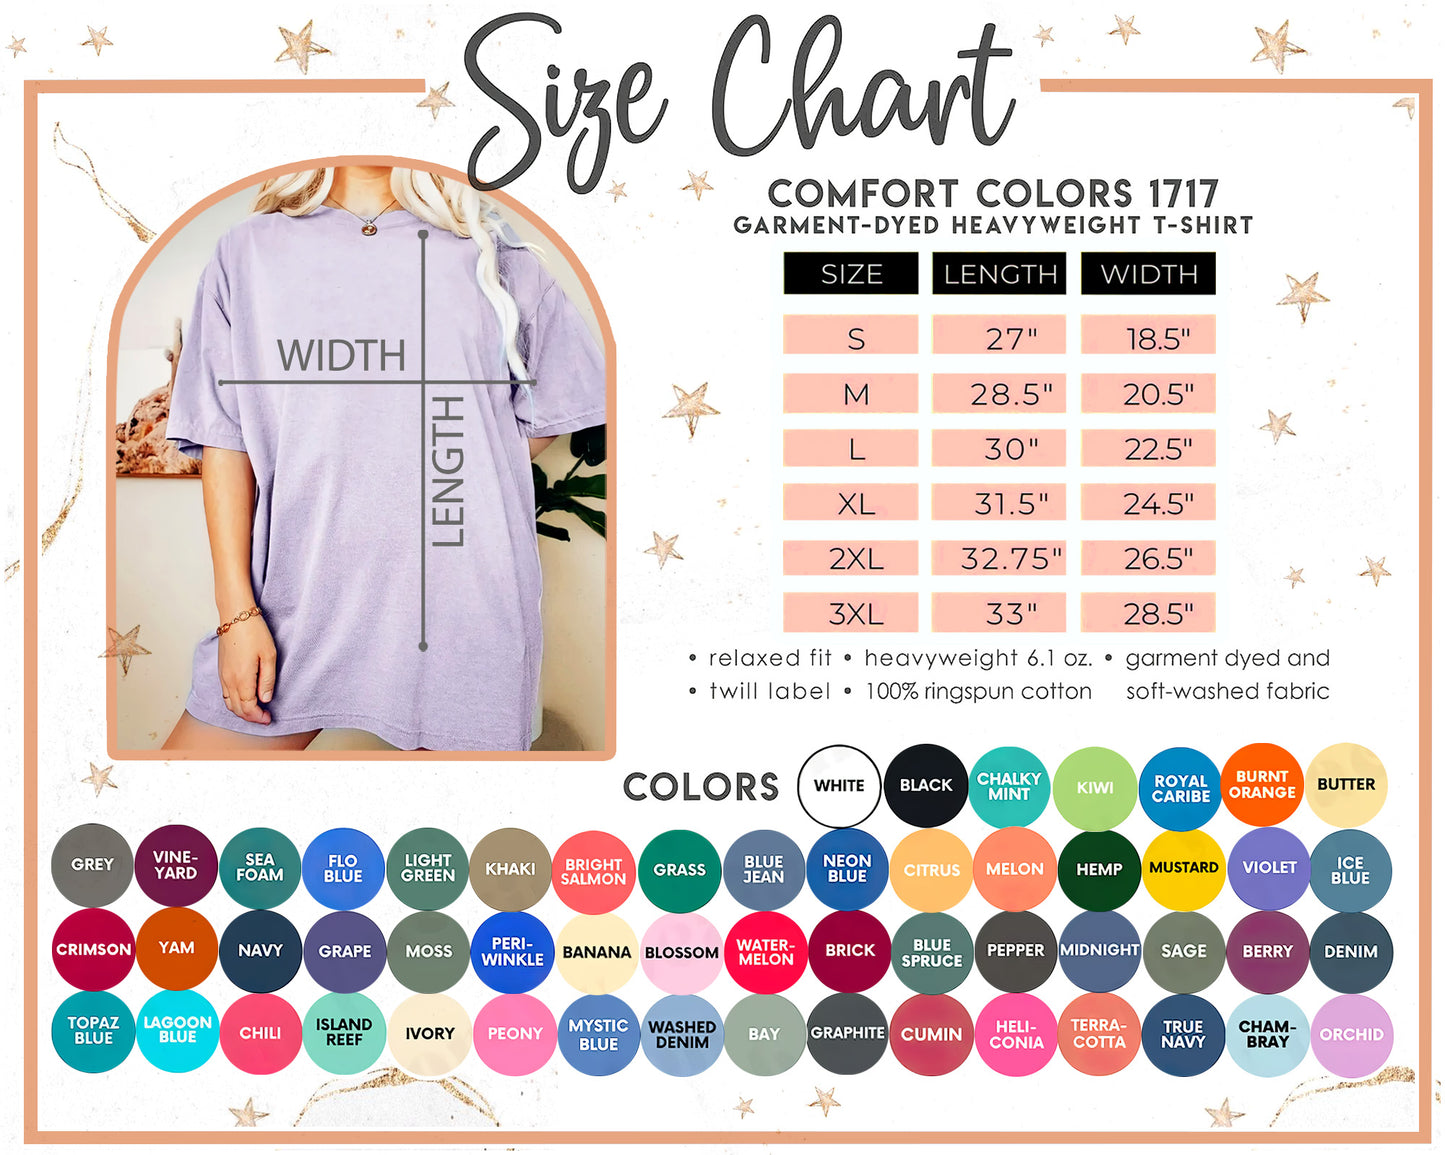 a women's size chart for a t - shirt